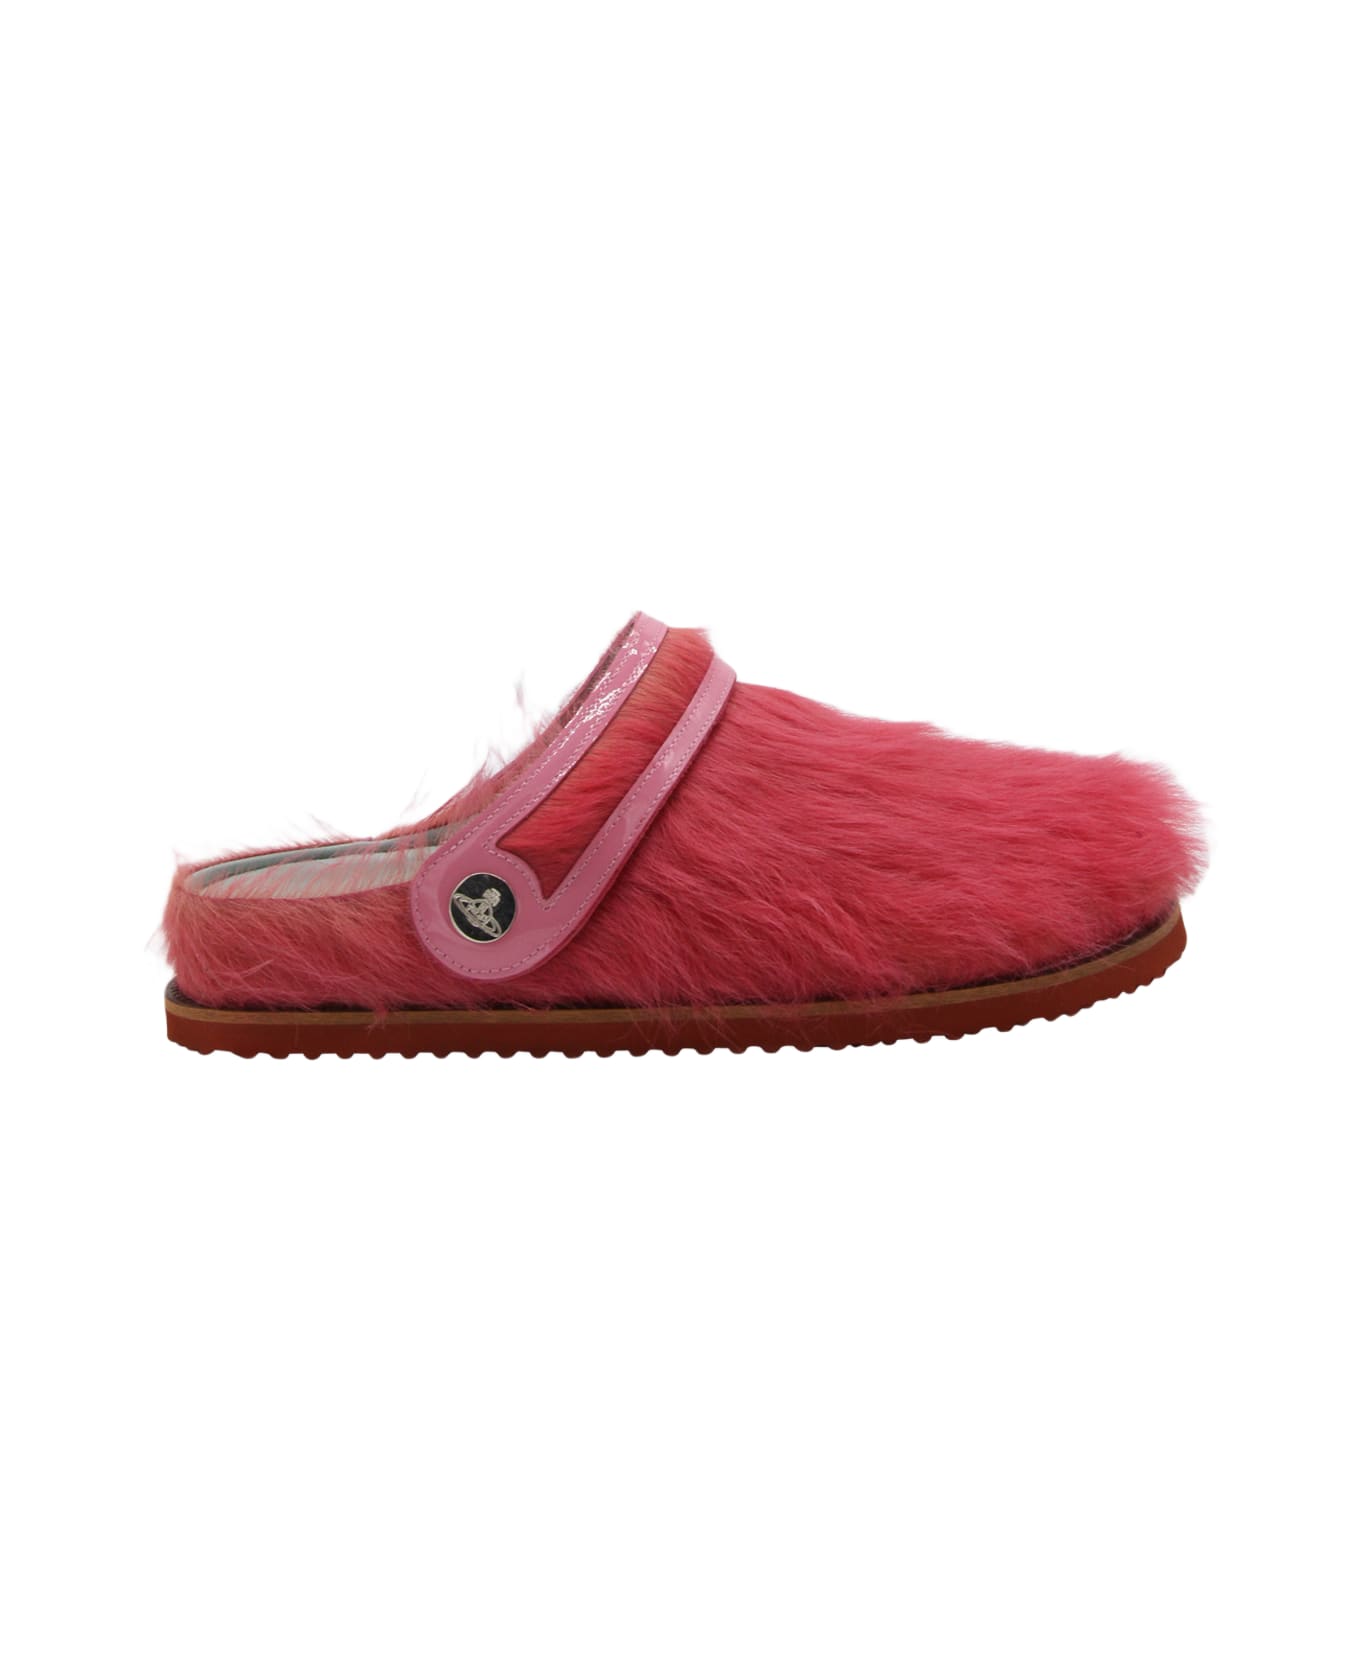 Vivienne Westwood Pink Oz Clog Sandals - Pink